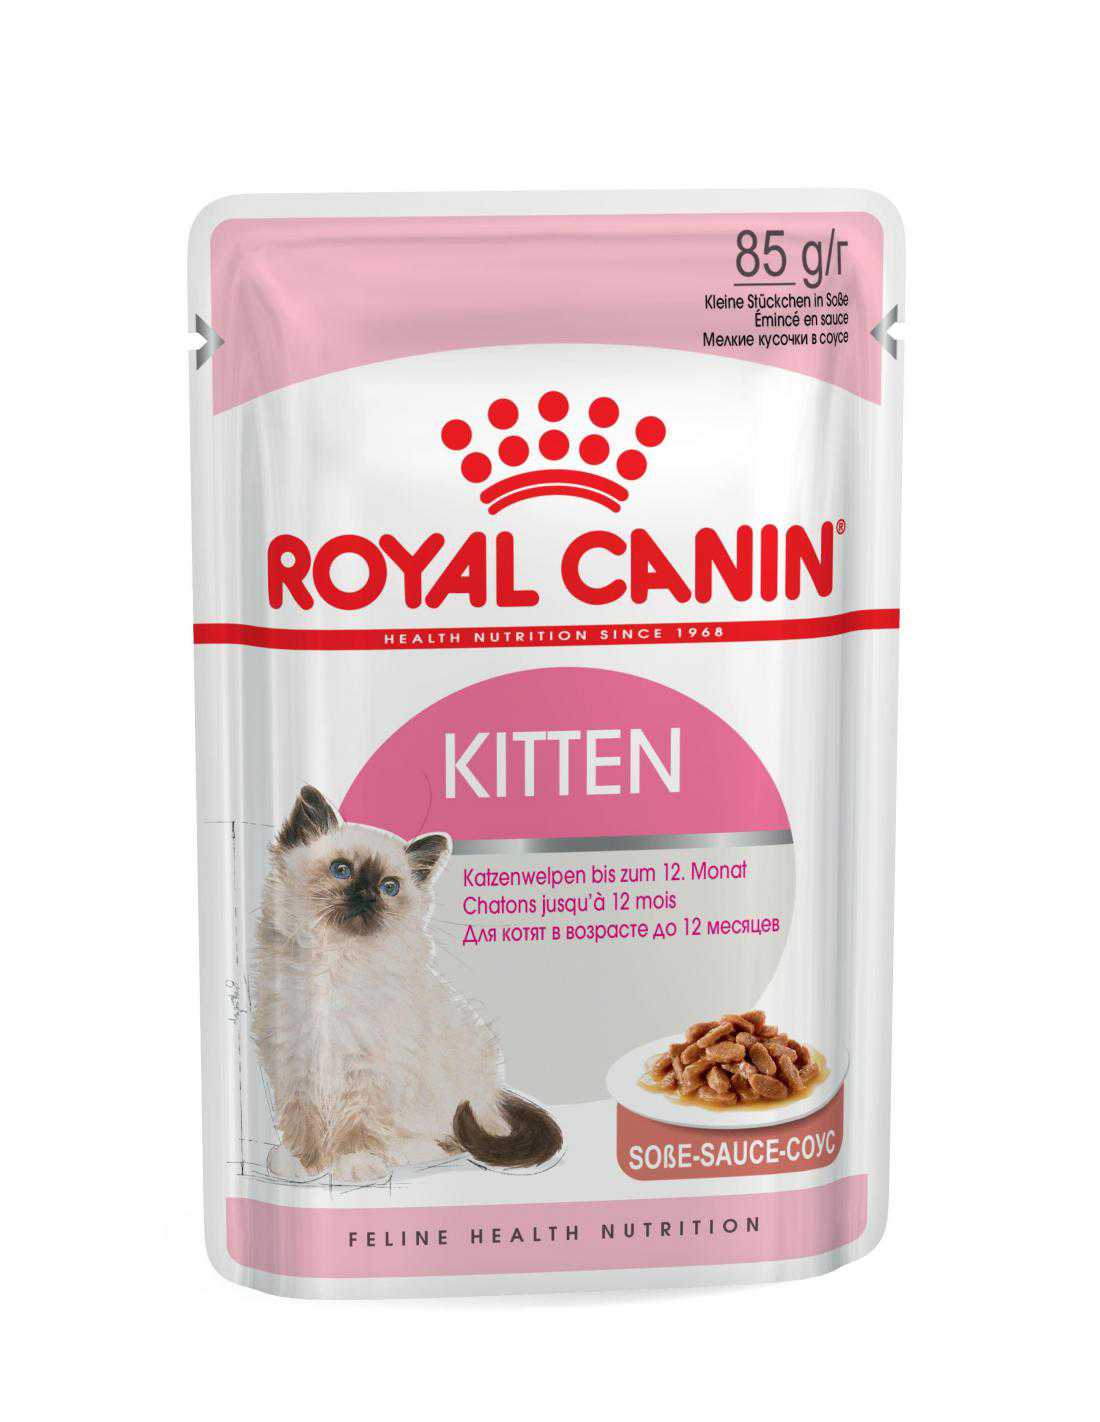 Kitten 85g Royal Canin